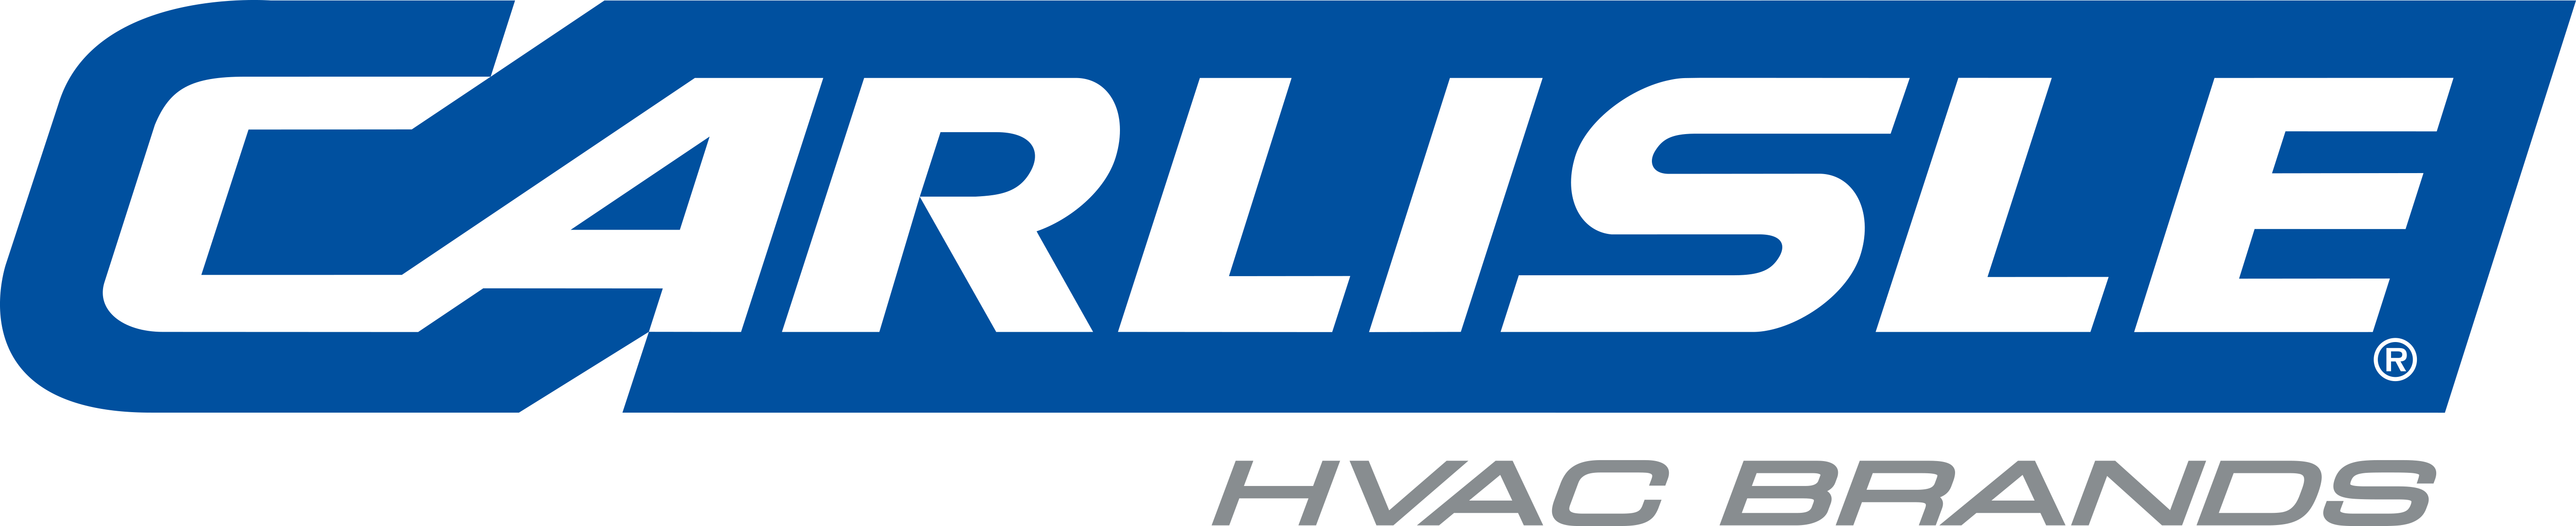 HVAC-11527 Carlisle HVAC Brands Logo-FINAL.png